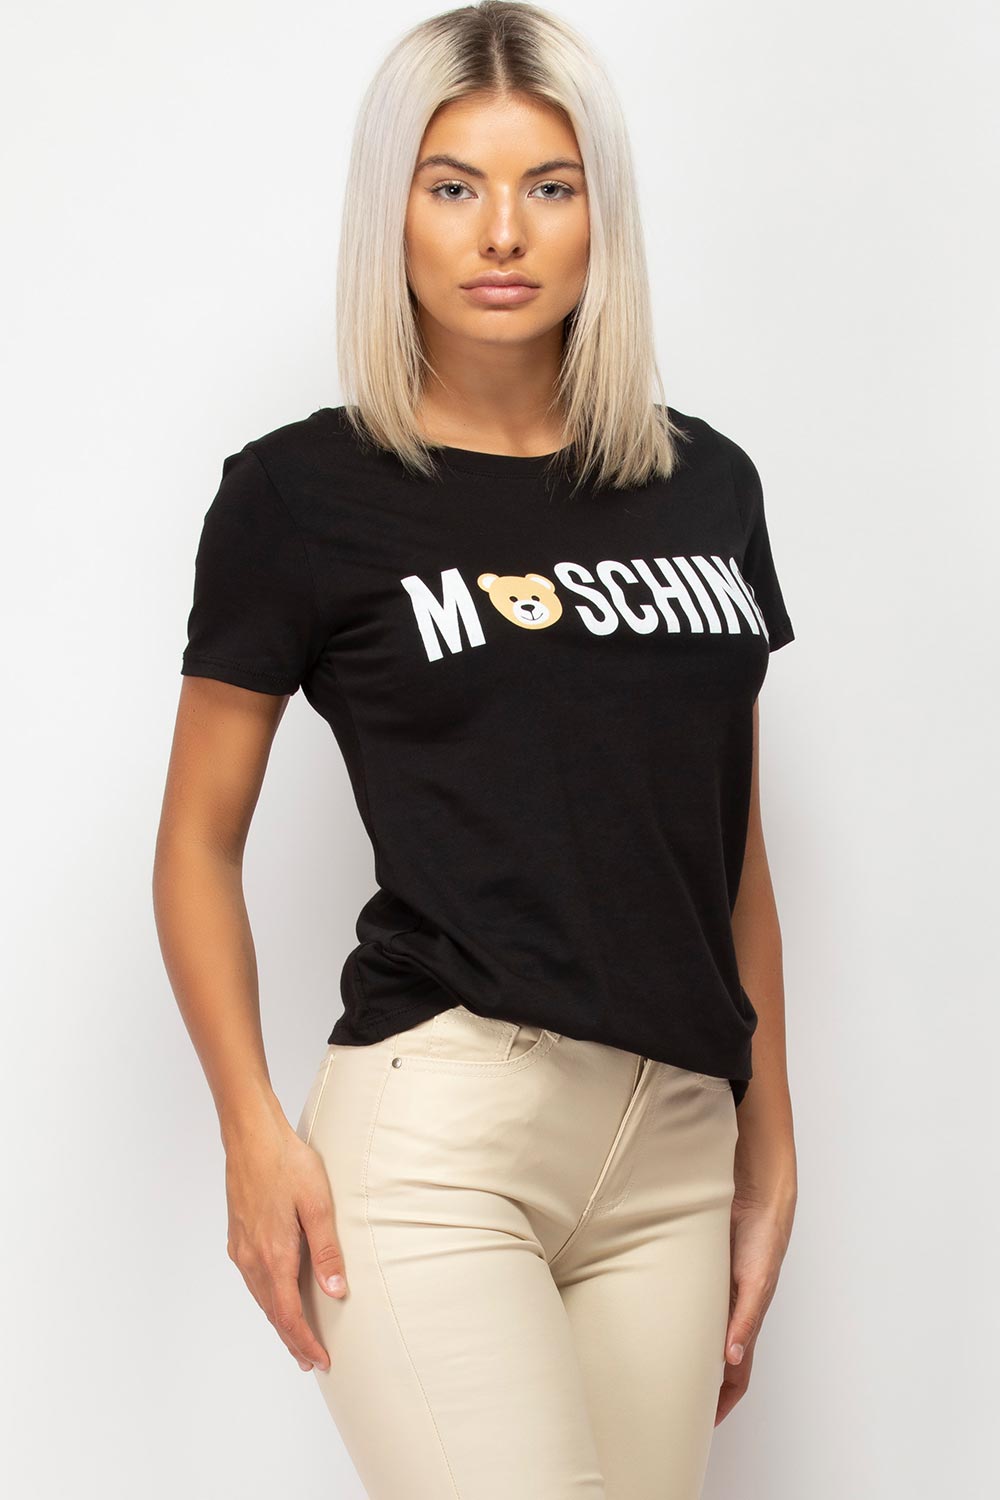 moschino inspired t shirt